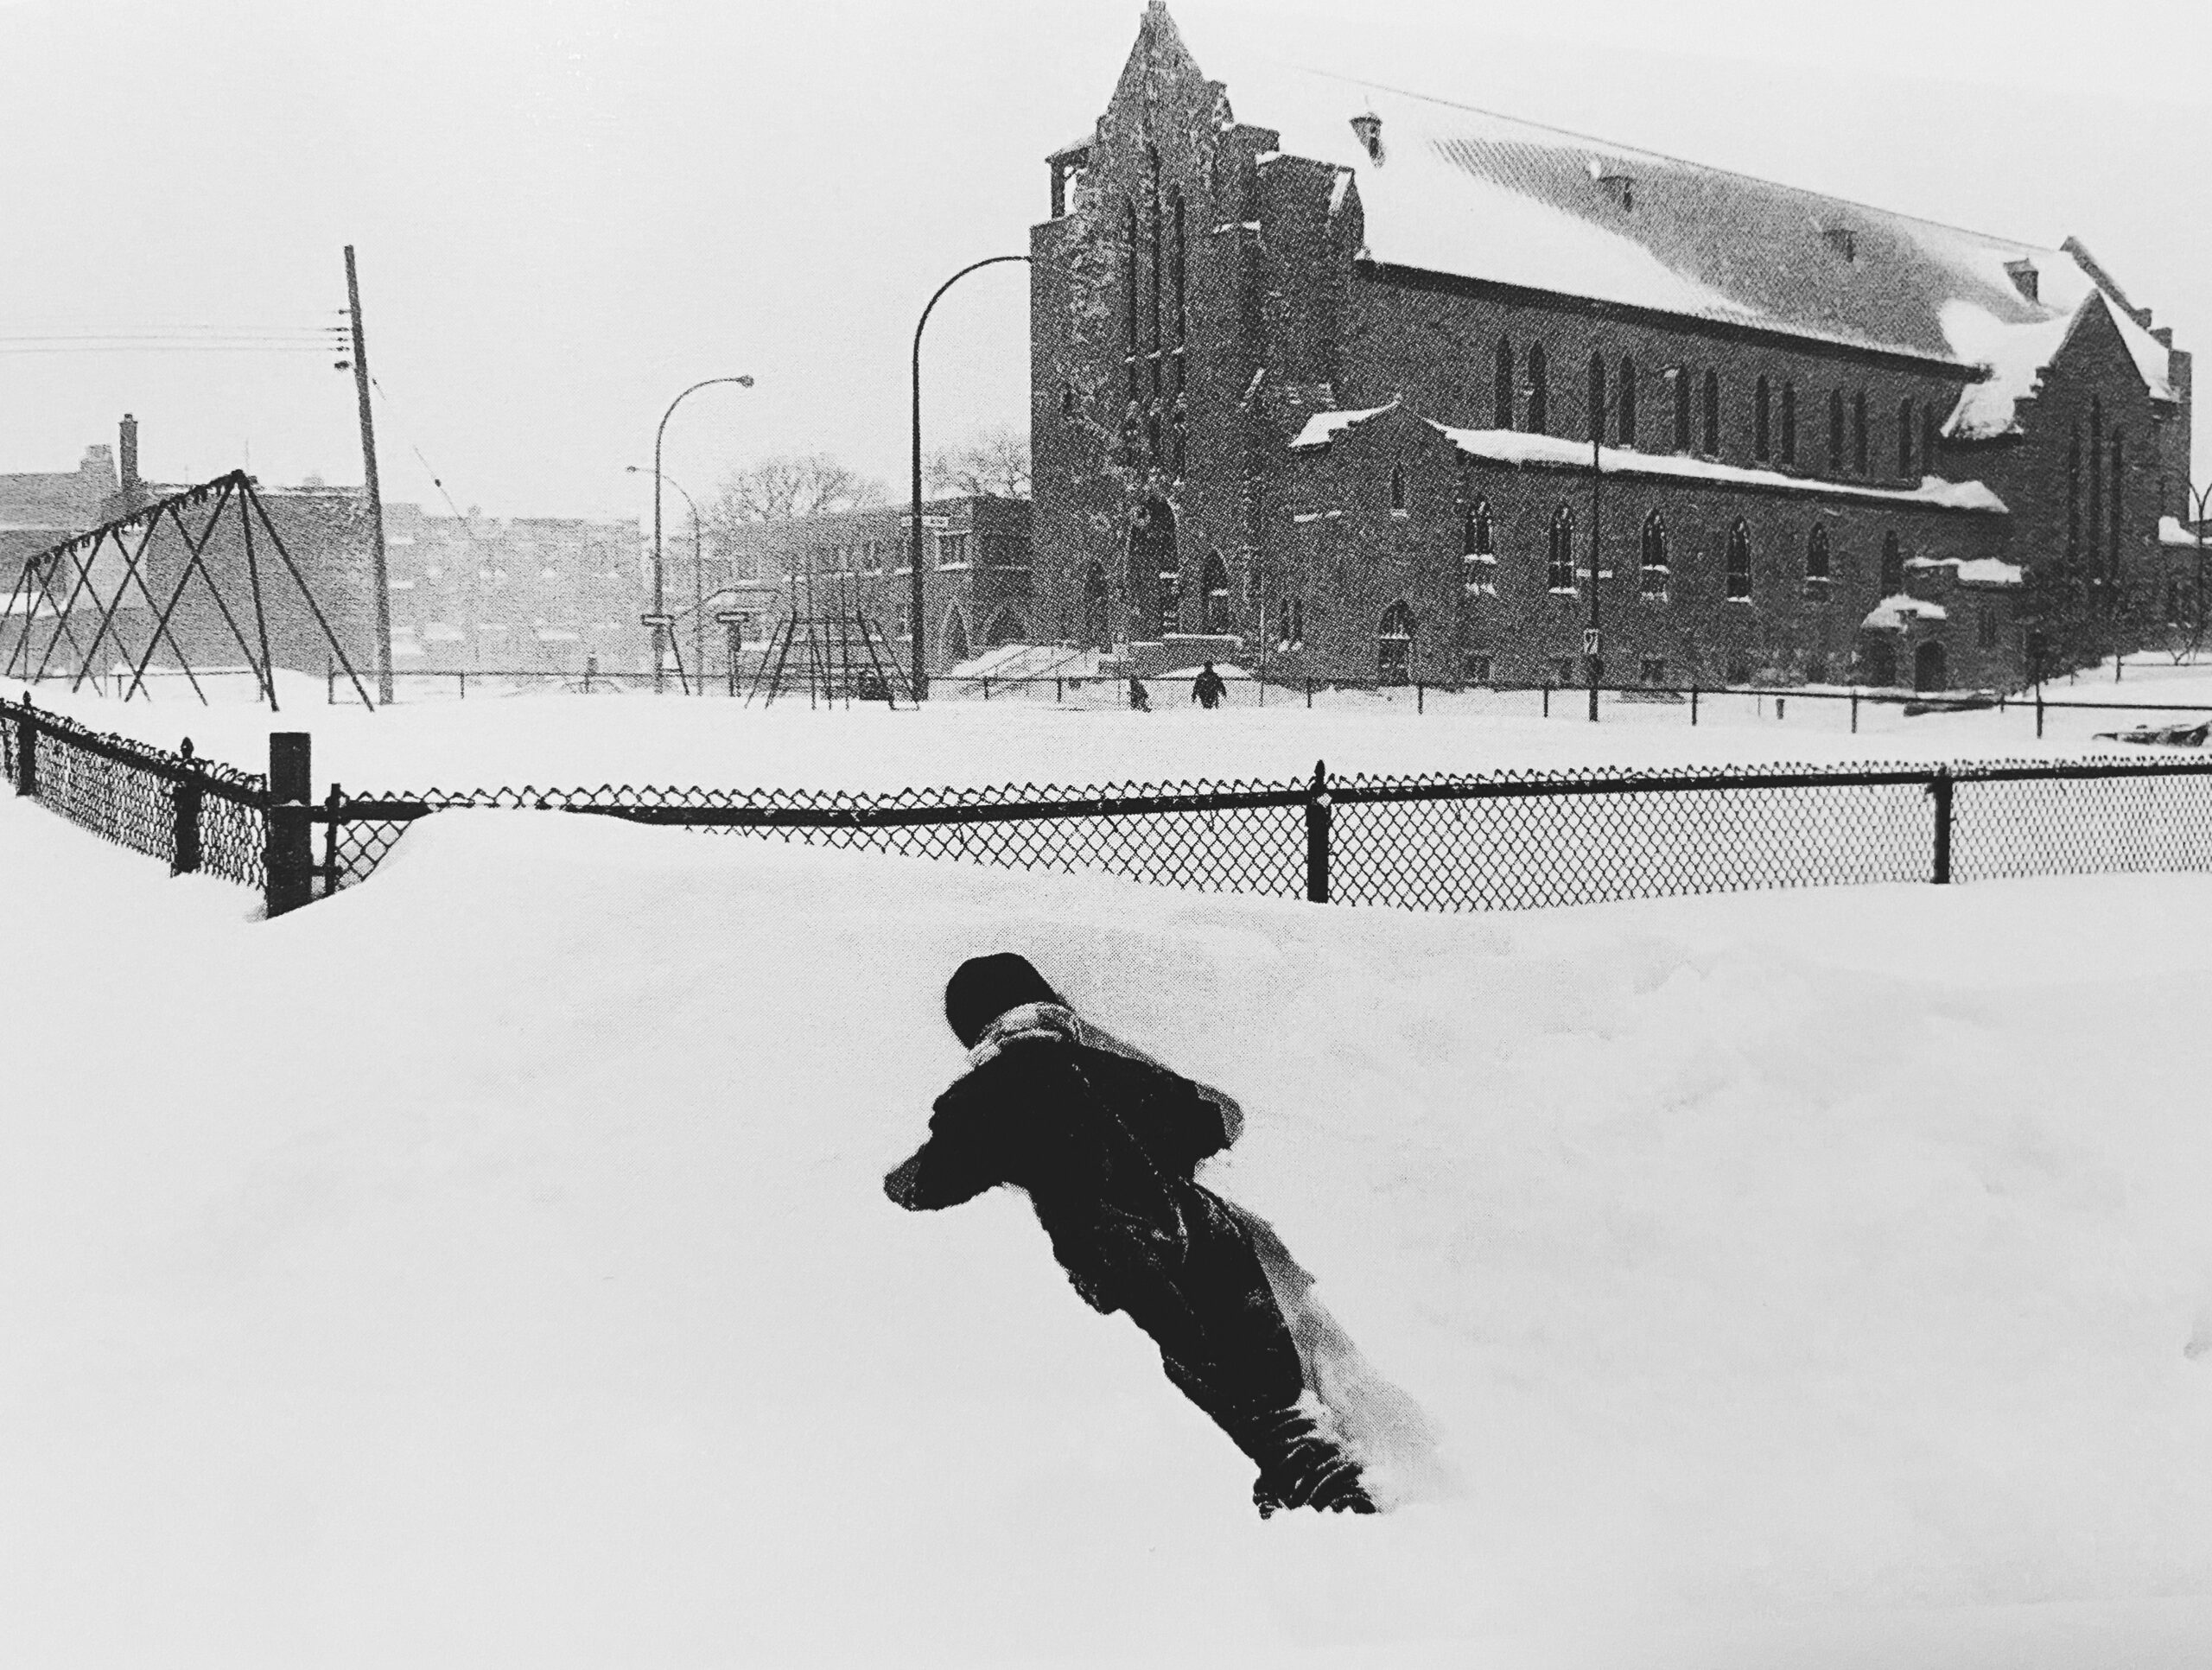 Photographie noir et blanc d'un enfant habillé d'habits d'hiver est étendu dans un bac de neige. Derrière, une clôture enneigée et une église.